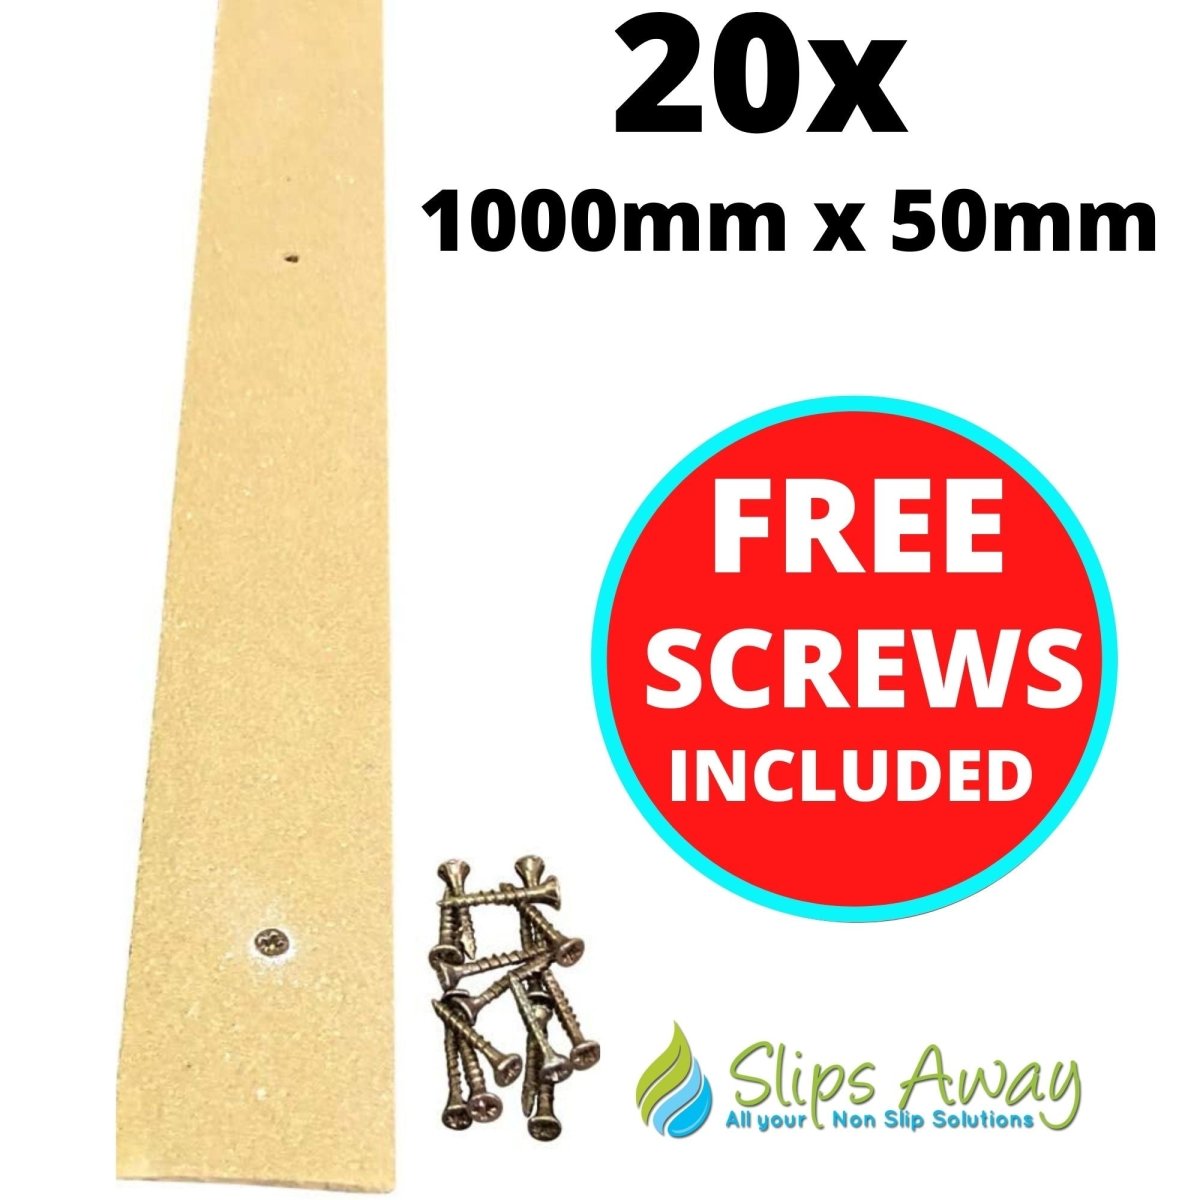 Beige Non Slip Decking Strips - Slips Away - decking strip beige 1000mm x 50mm 20x pack -